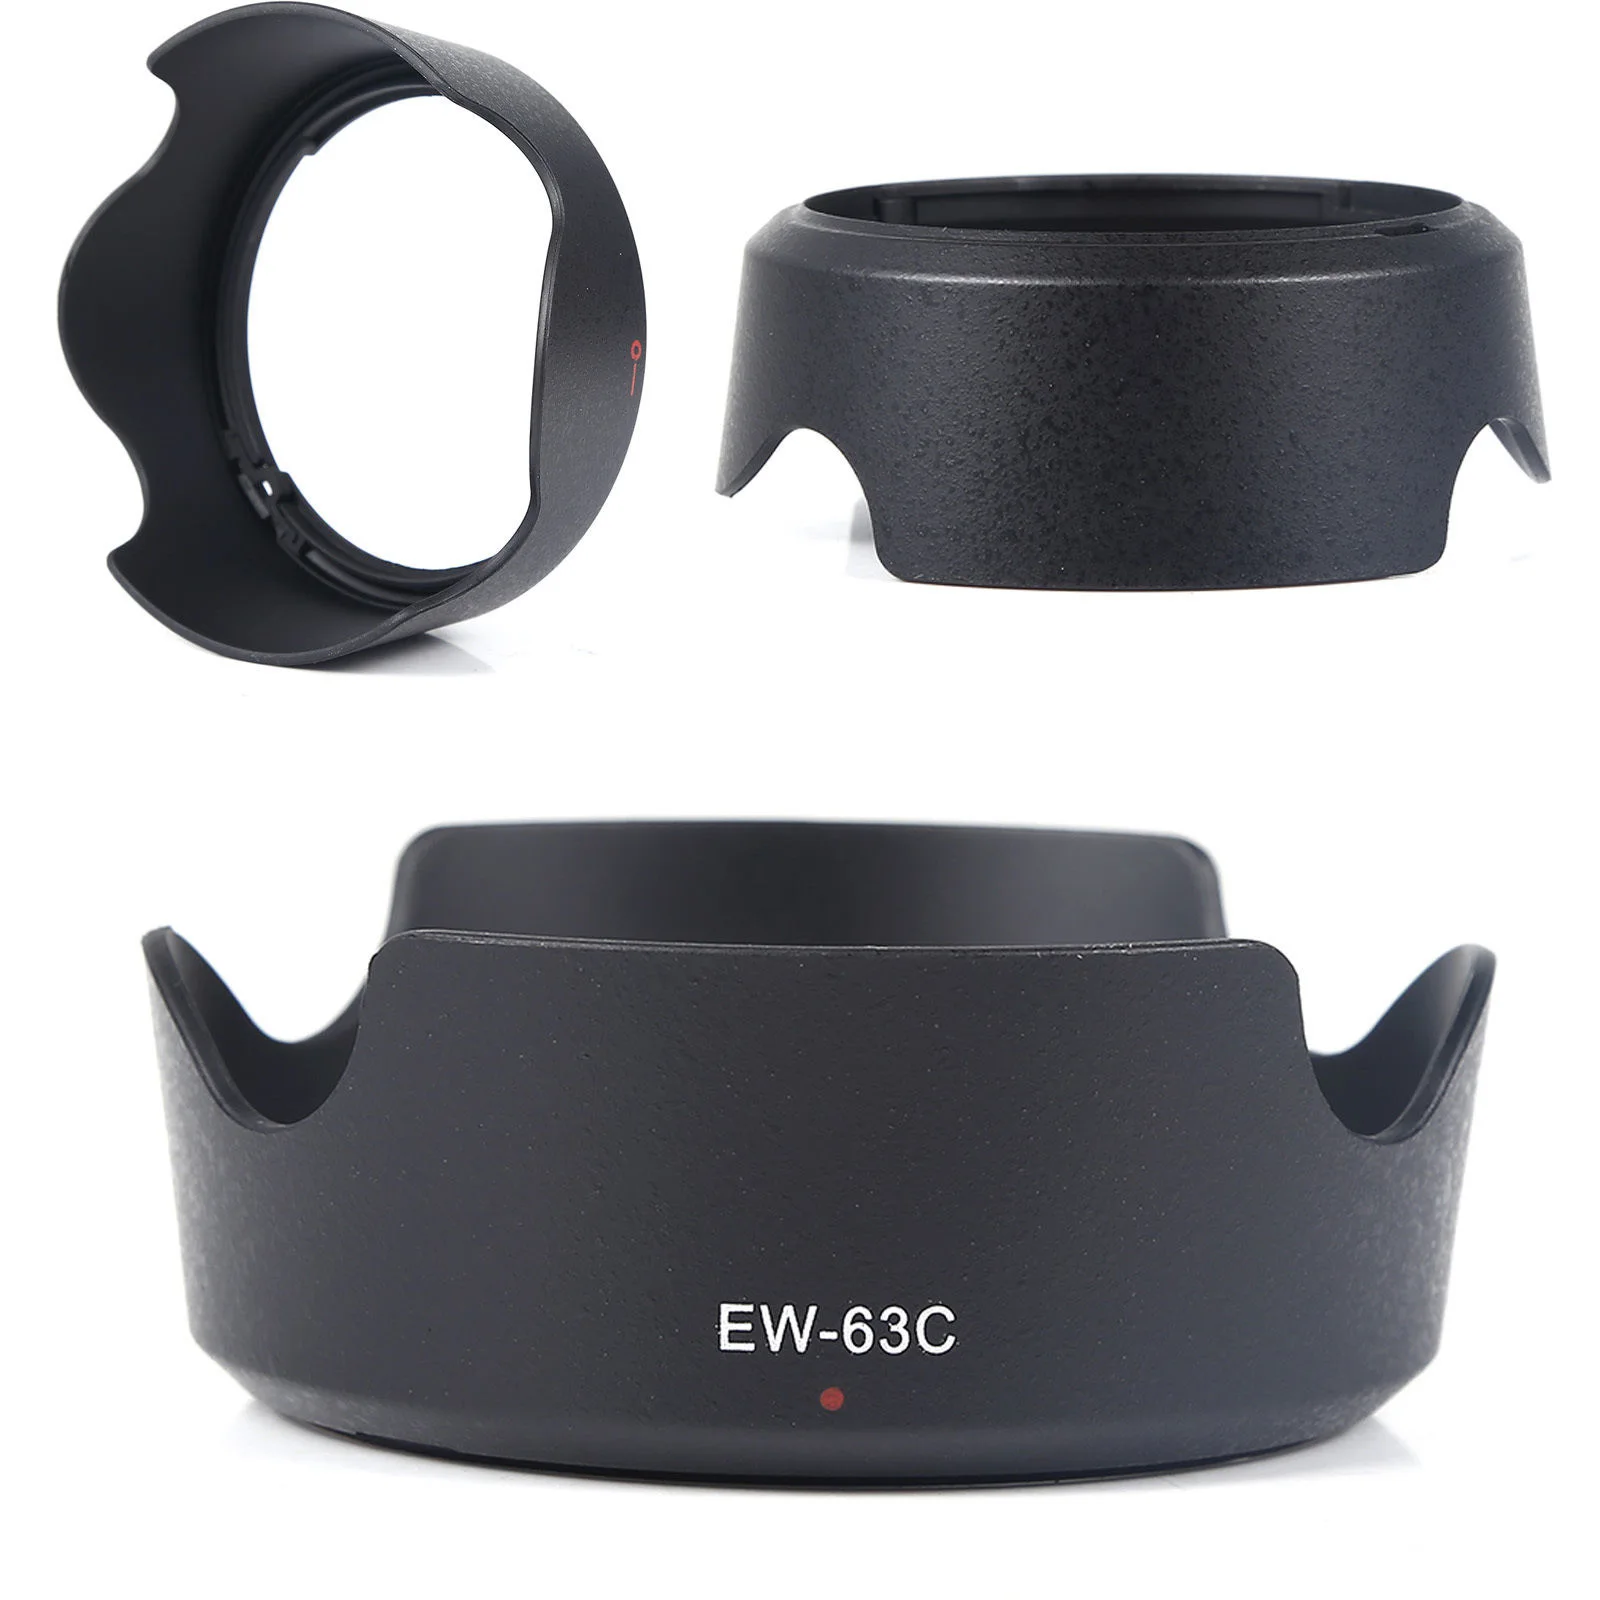 Cubierta de lente de EW-63C reversible, cubierta de lente de 58mm ew63c para Canon EF-S 18-55mm f/3,5-5,6 IS STM aplicable 700D 100D 750D 760D